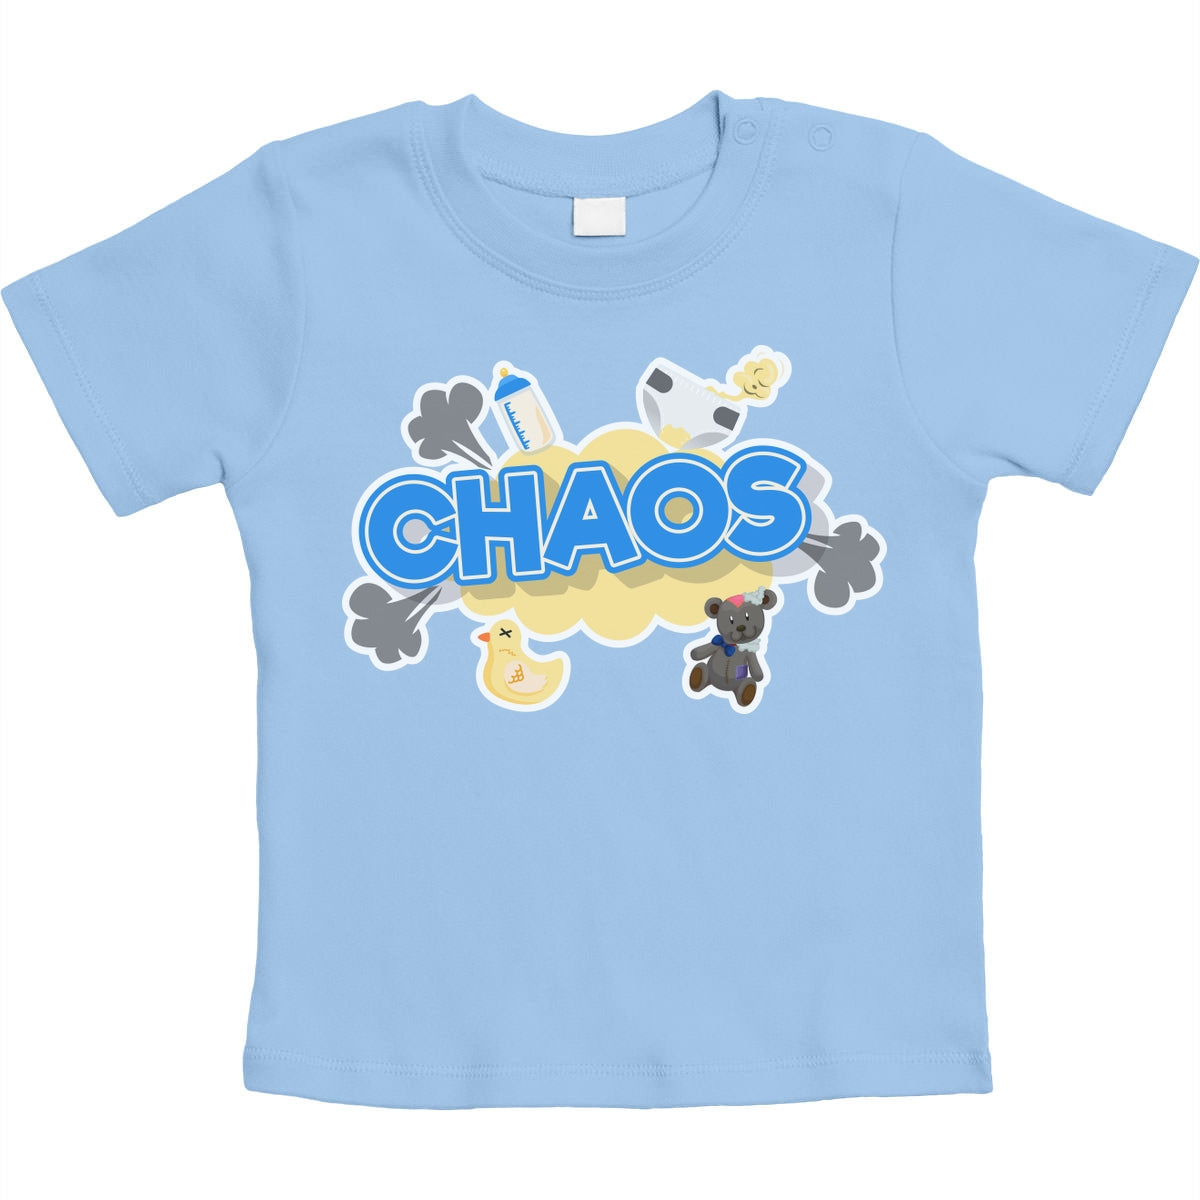 Chaos - Lustiger Spruch für Babies Unisex Baby T-Shirt Gr. 66-93